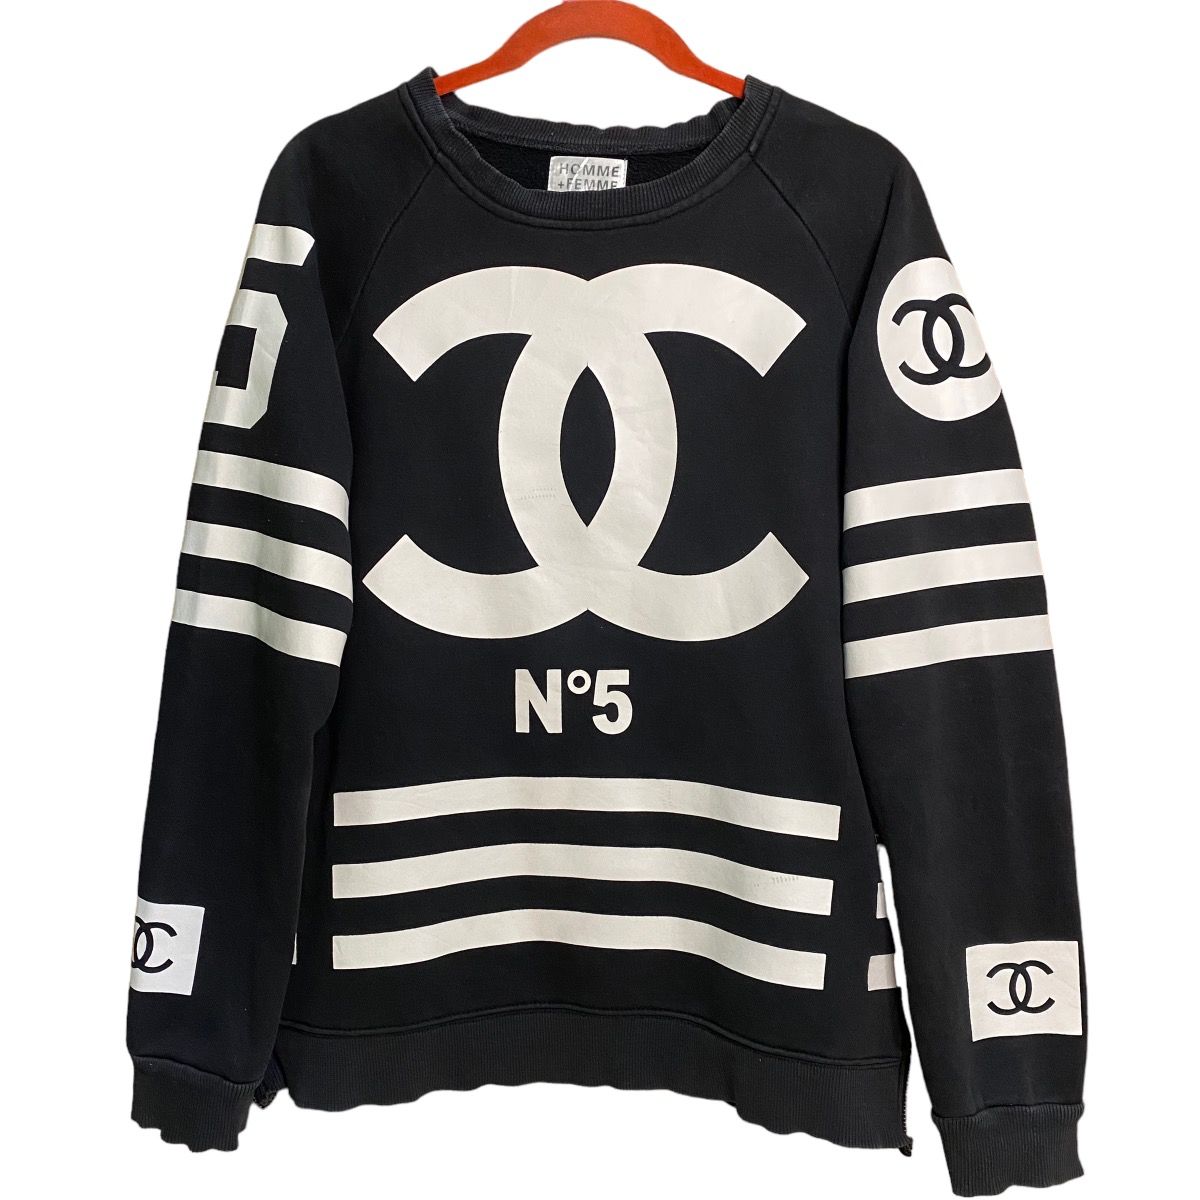 Coco Chanel Crewneck Sweatshirts for Sale